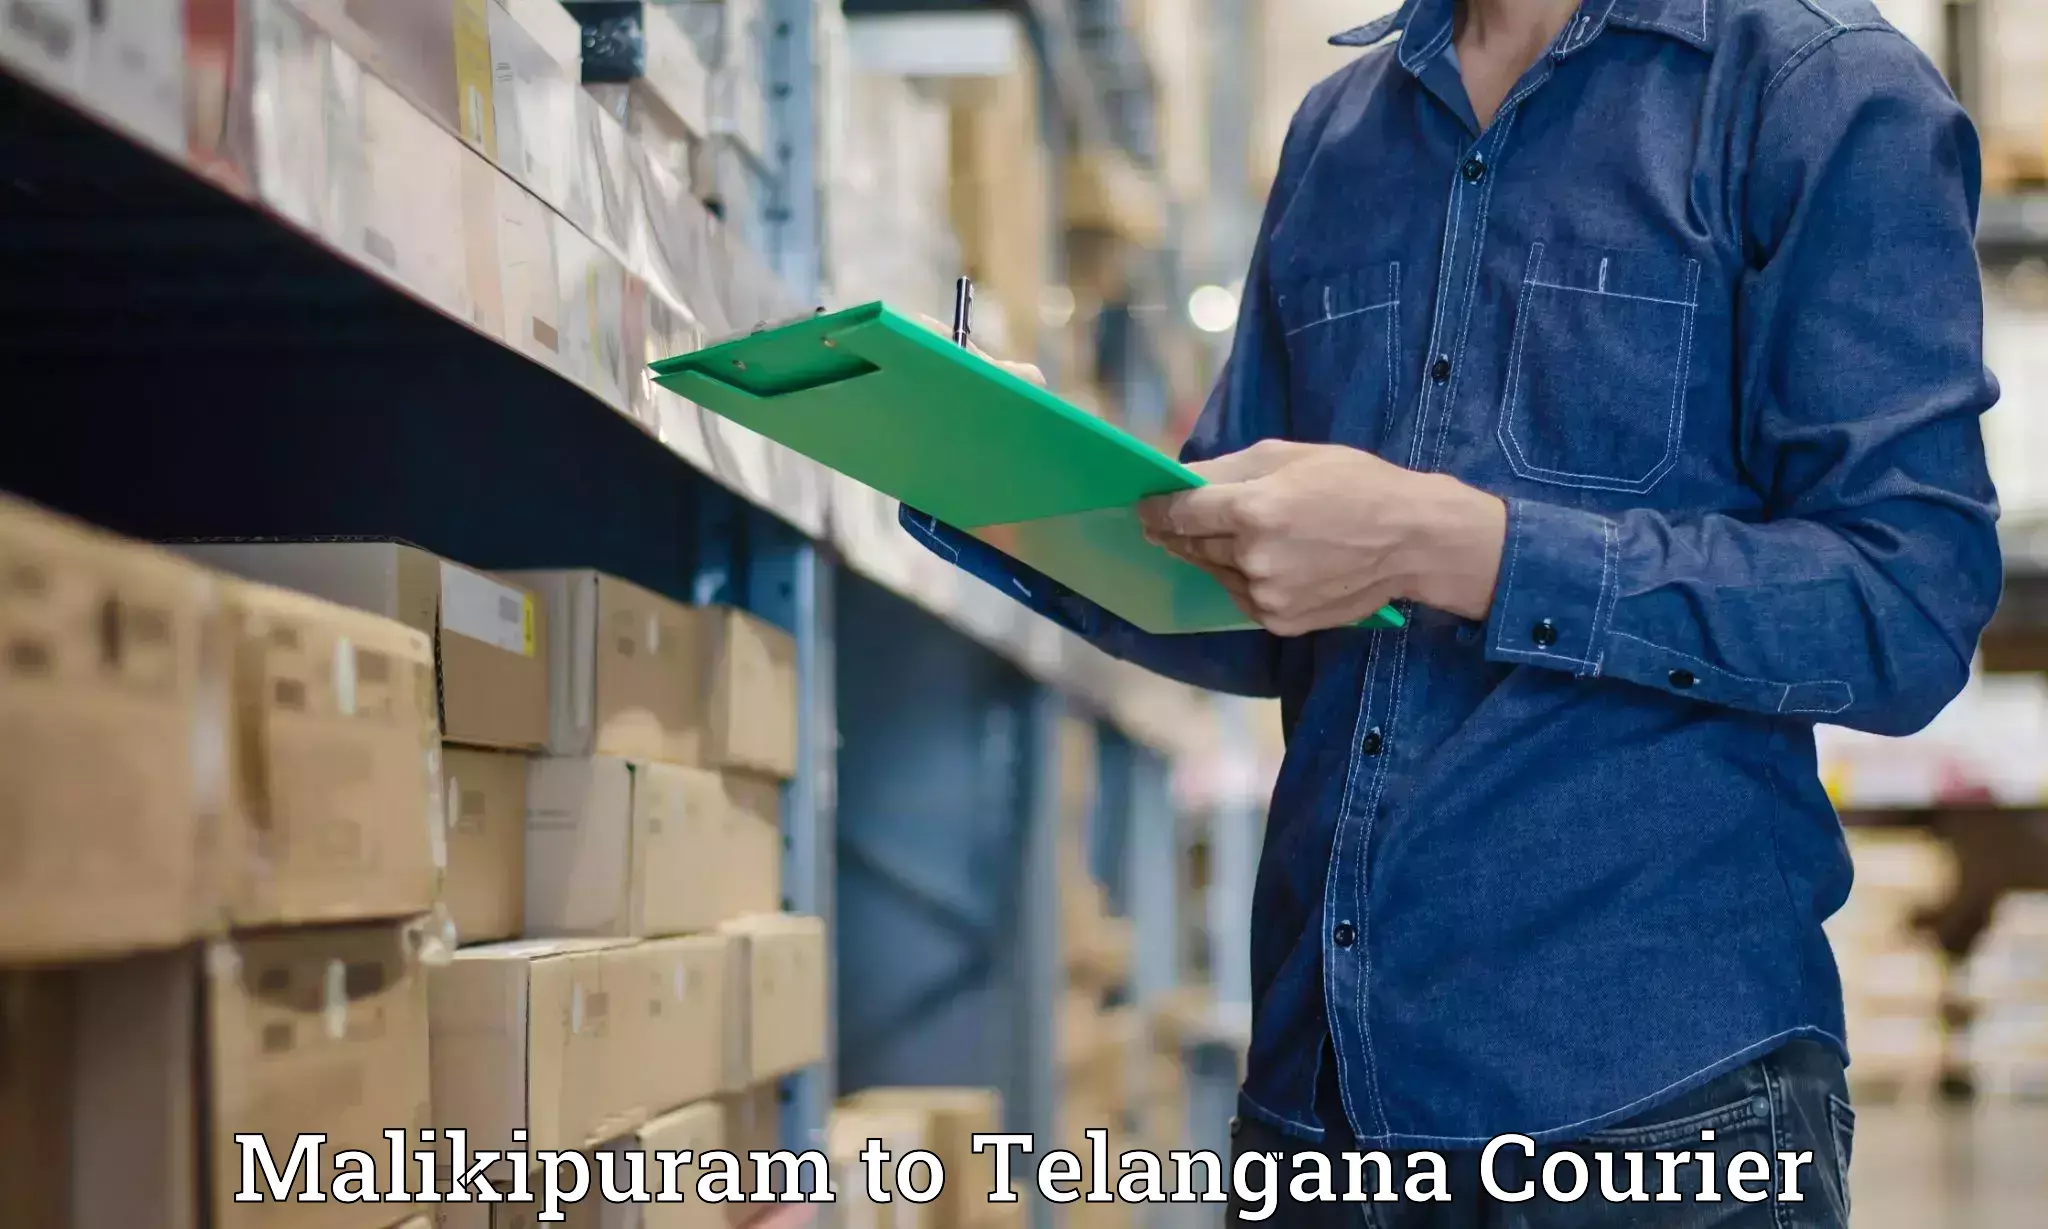 Urgent courier needs Malikipuram to Padmajiwadi